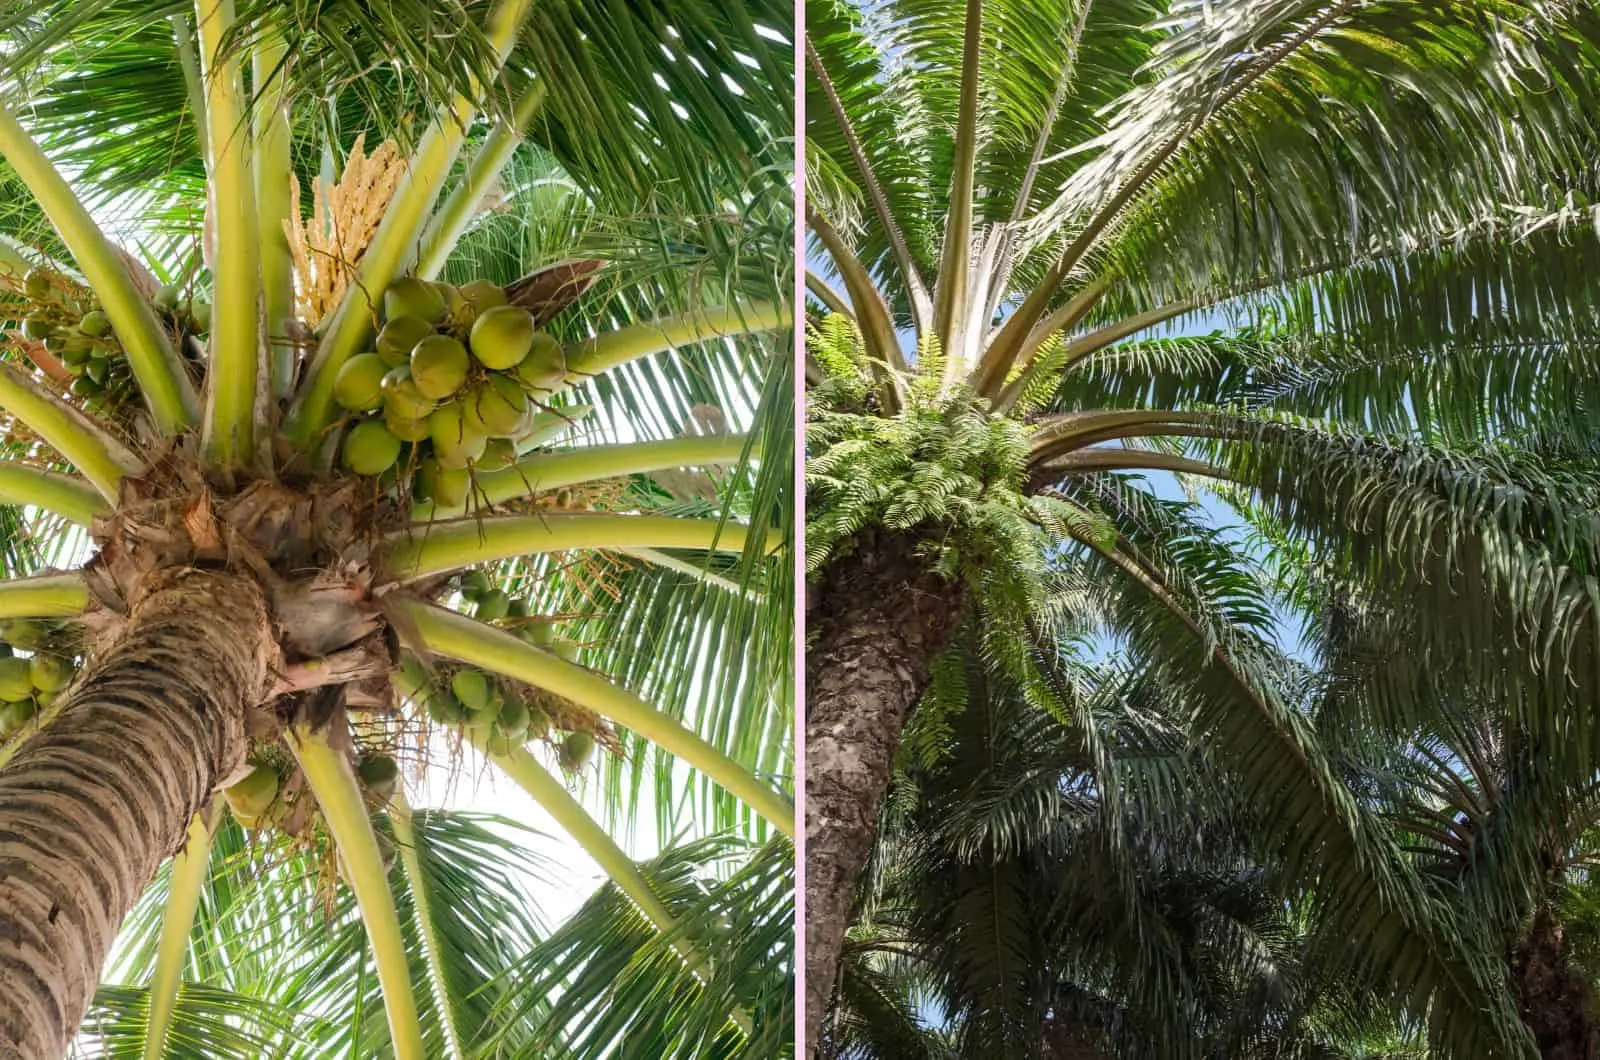 Coconut Tree vs Palm Tree photos from bottom up